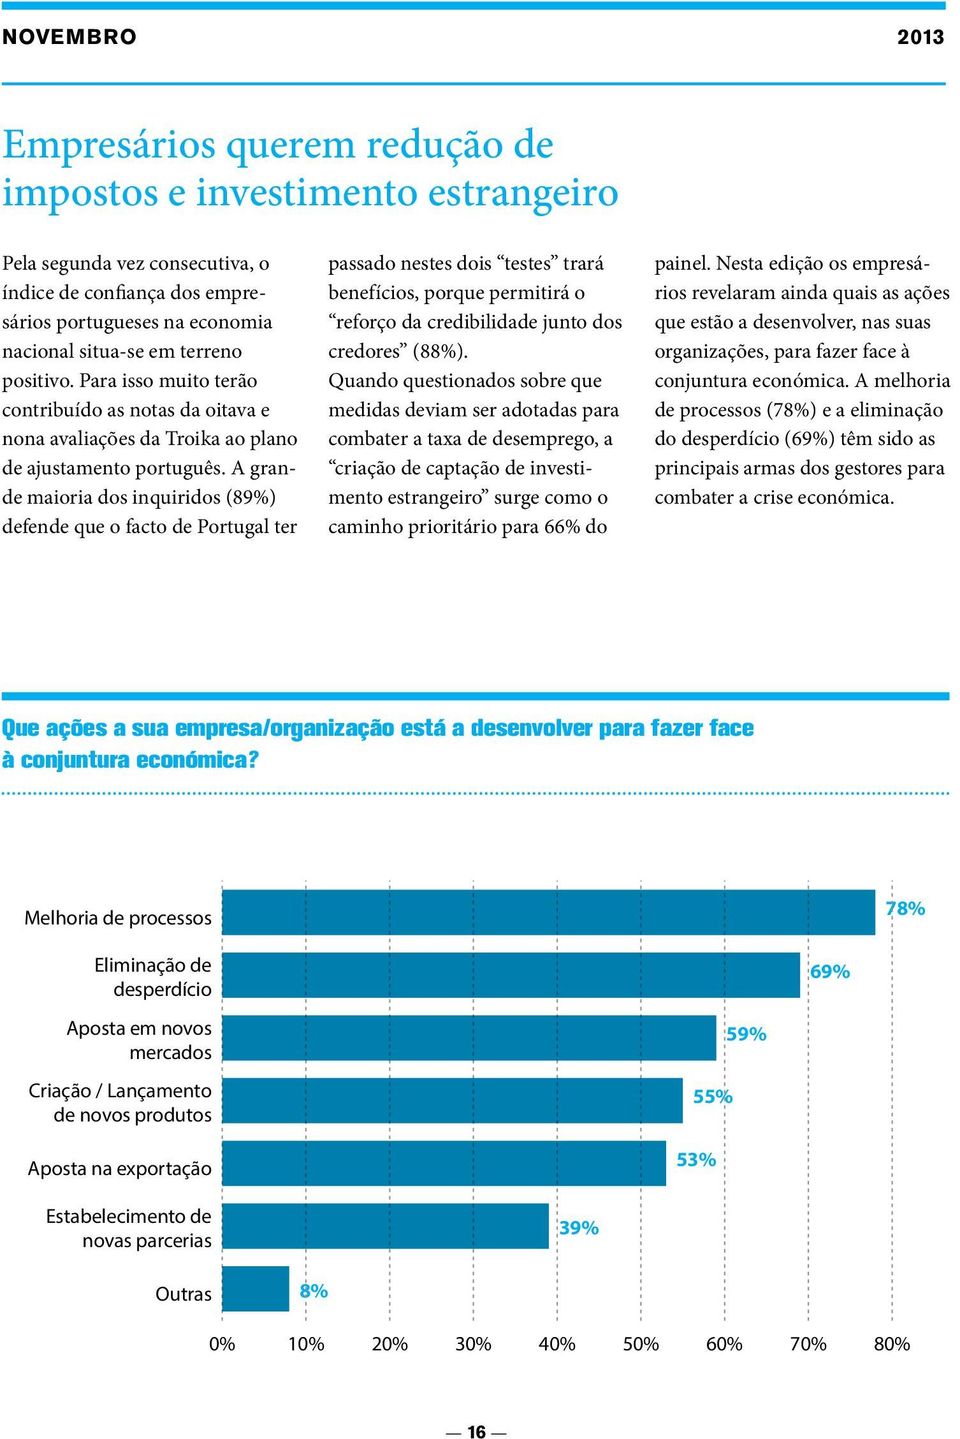 A grande maioria dos inquiridos (89%) defende que o facto de Portugal ter passado nestes dois testes trará benefícios, porque permitirá o reforço da credibilidade junto dos credores (88%).